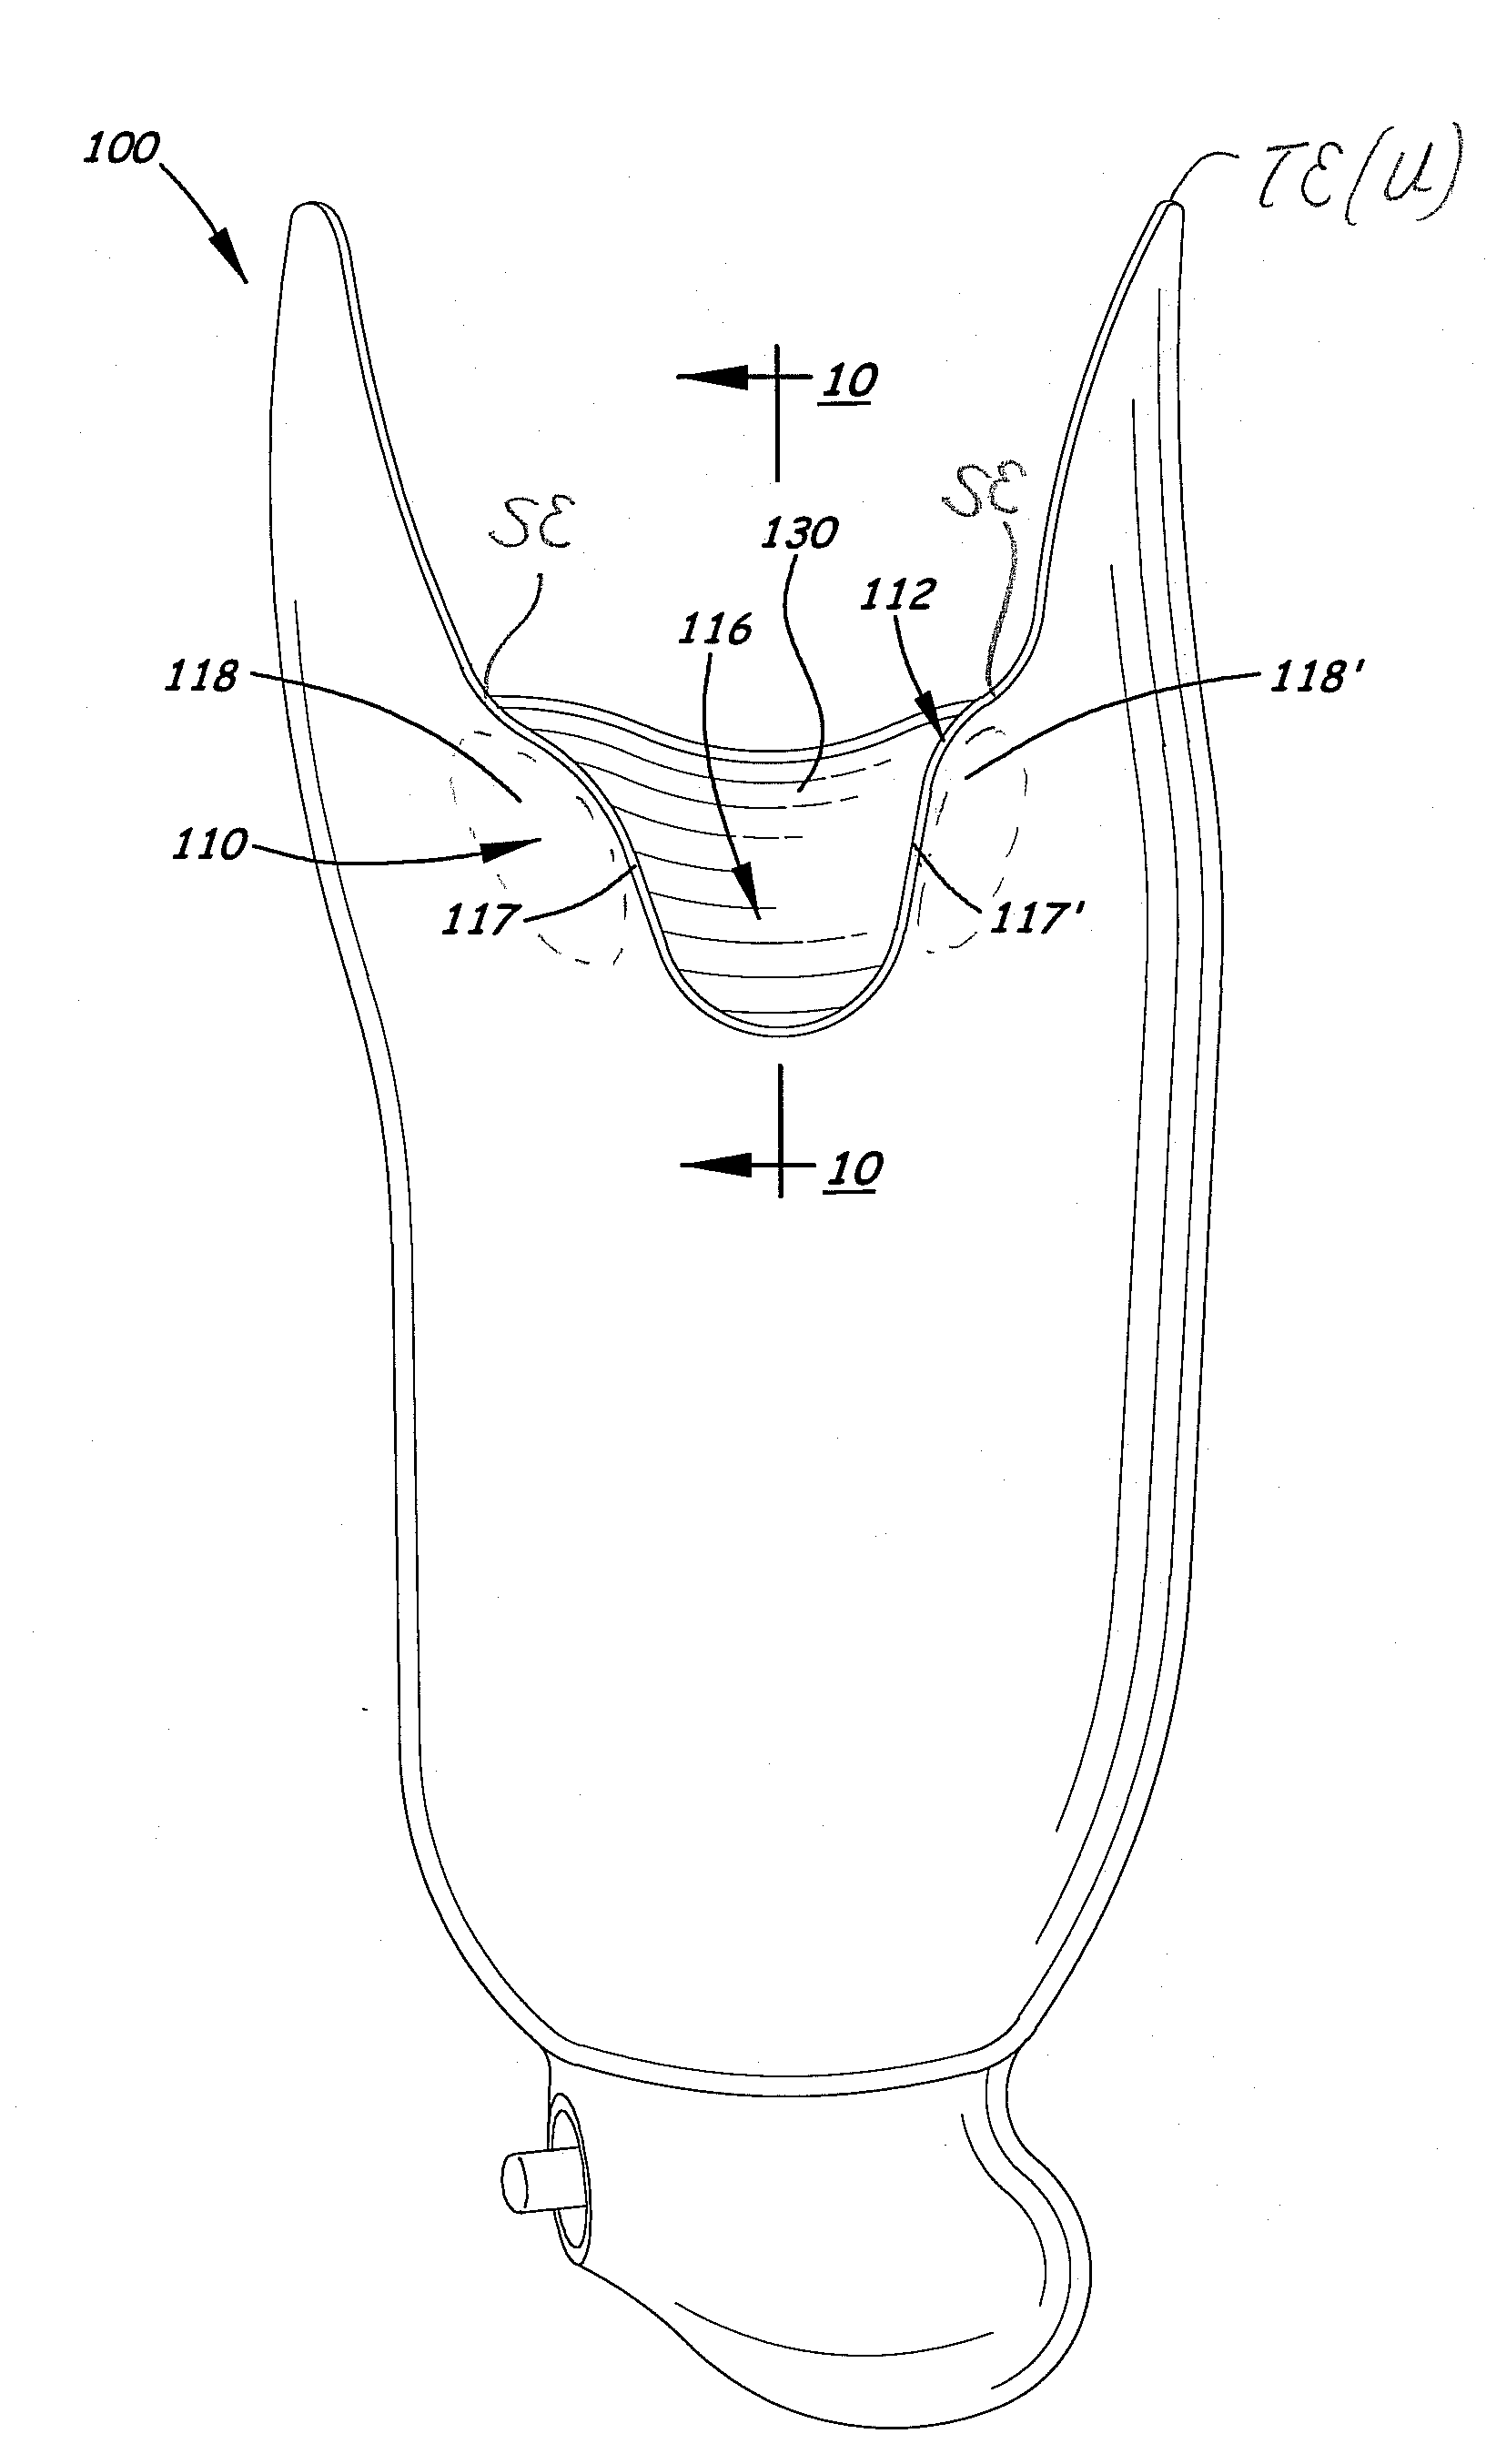 Transtibial socket for external prosthesis